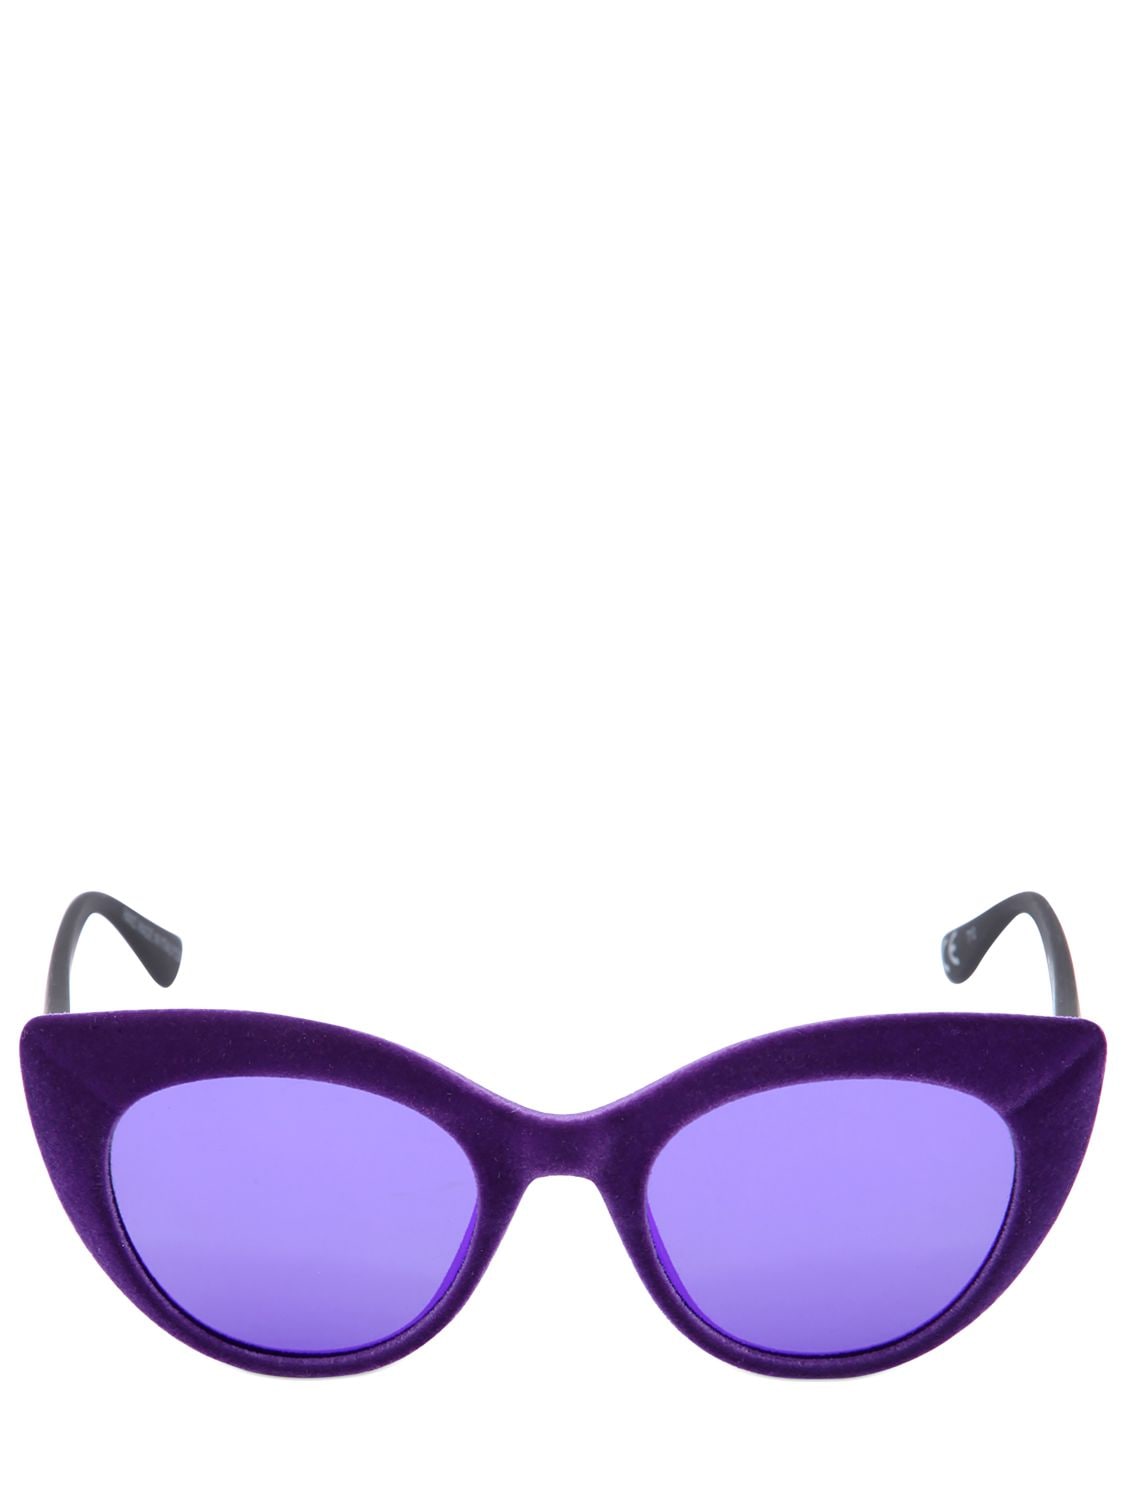 Italia Independent I-velvet 0927v Cat-eye Sunglasses In Purple